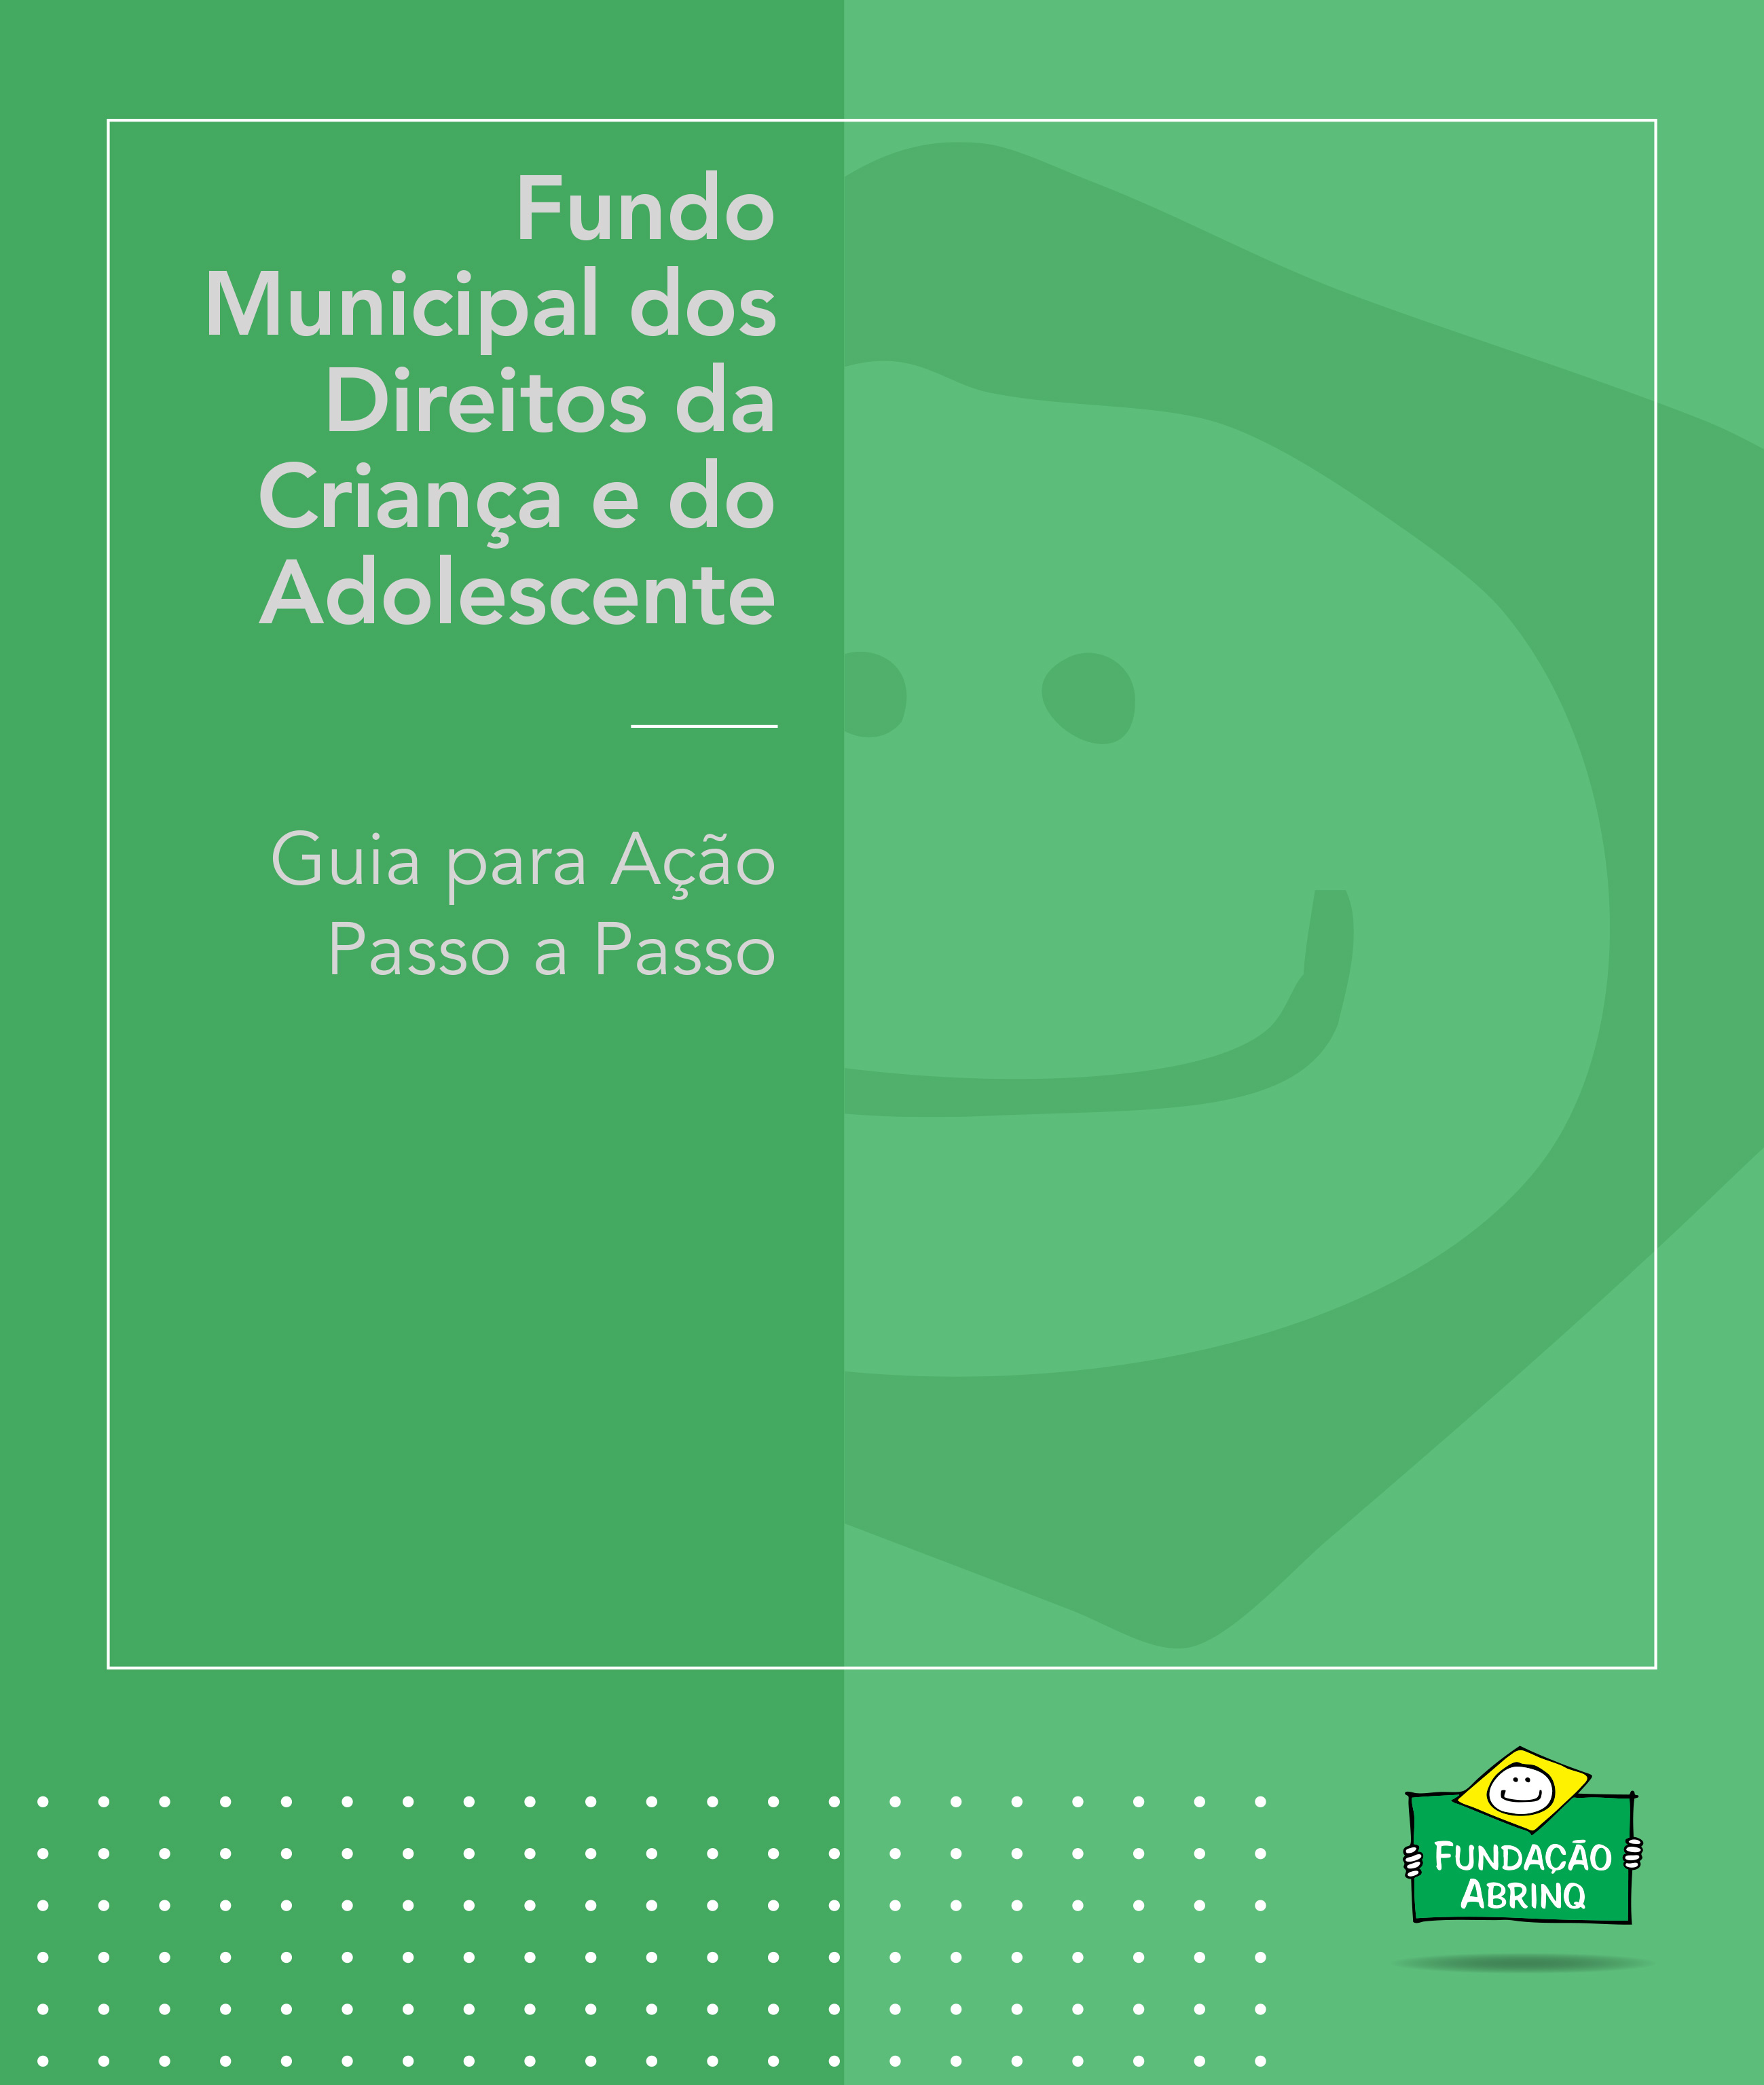 Fundo Municipal – Guia para ação passo a passo